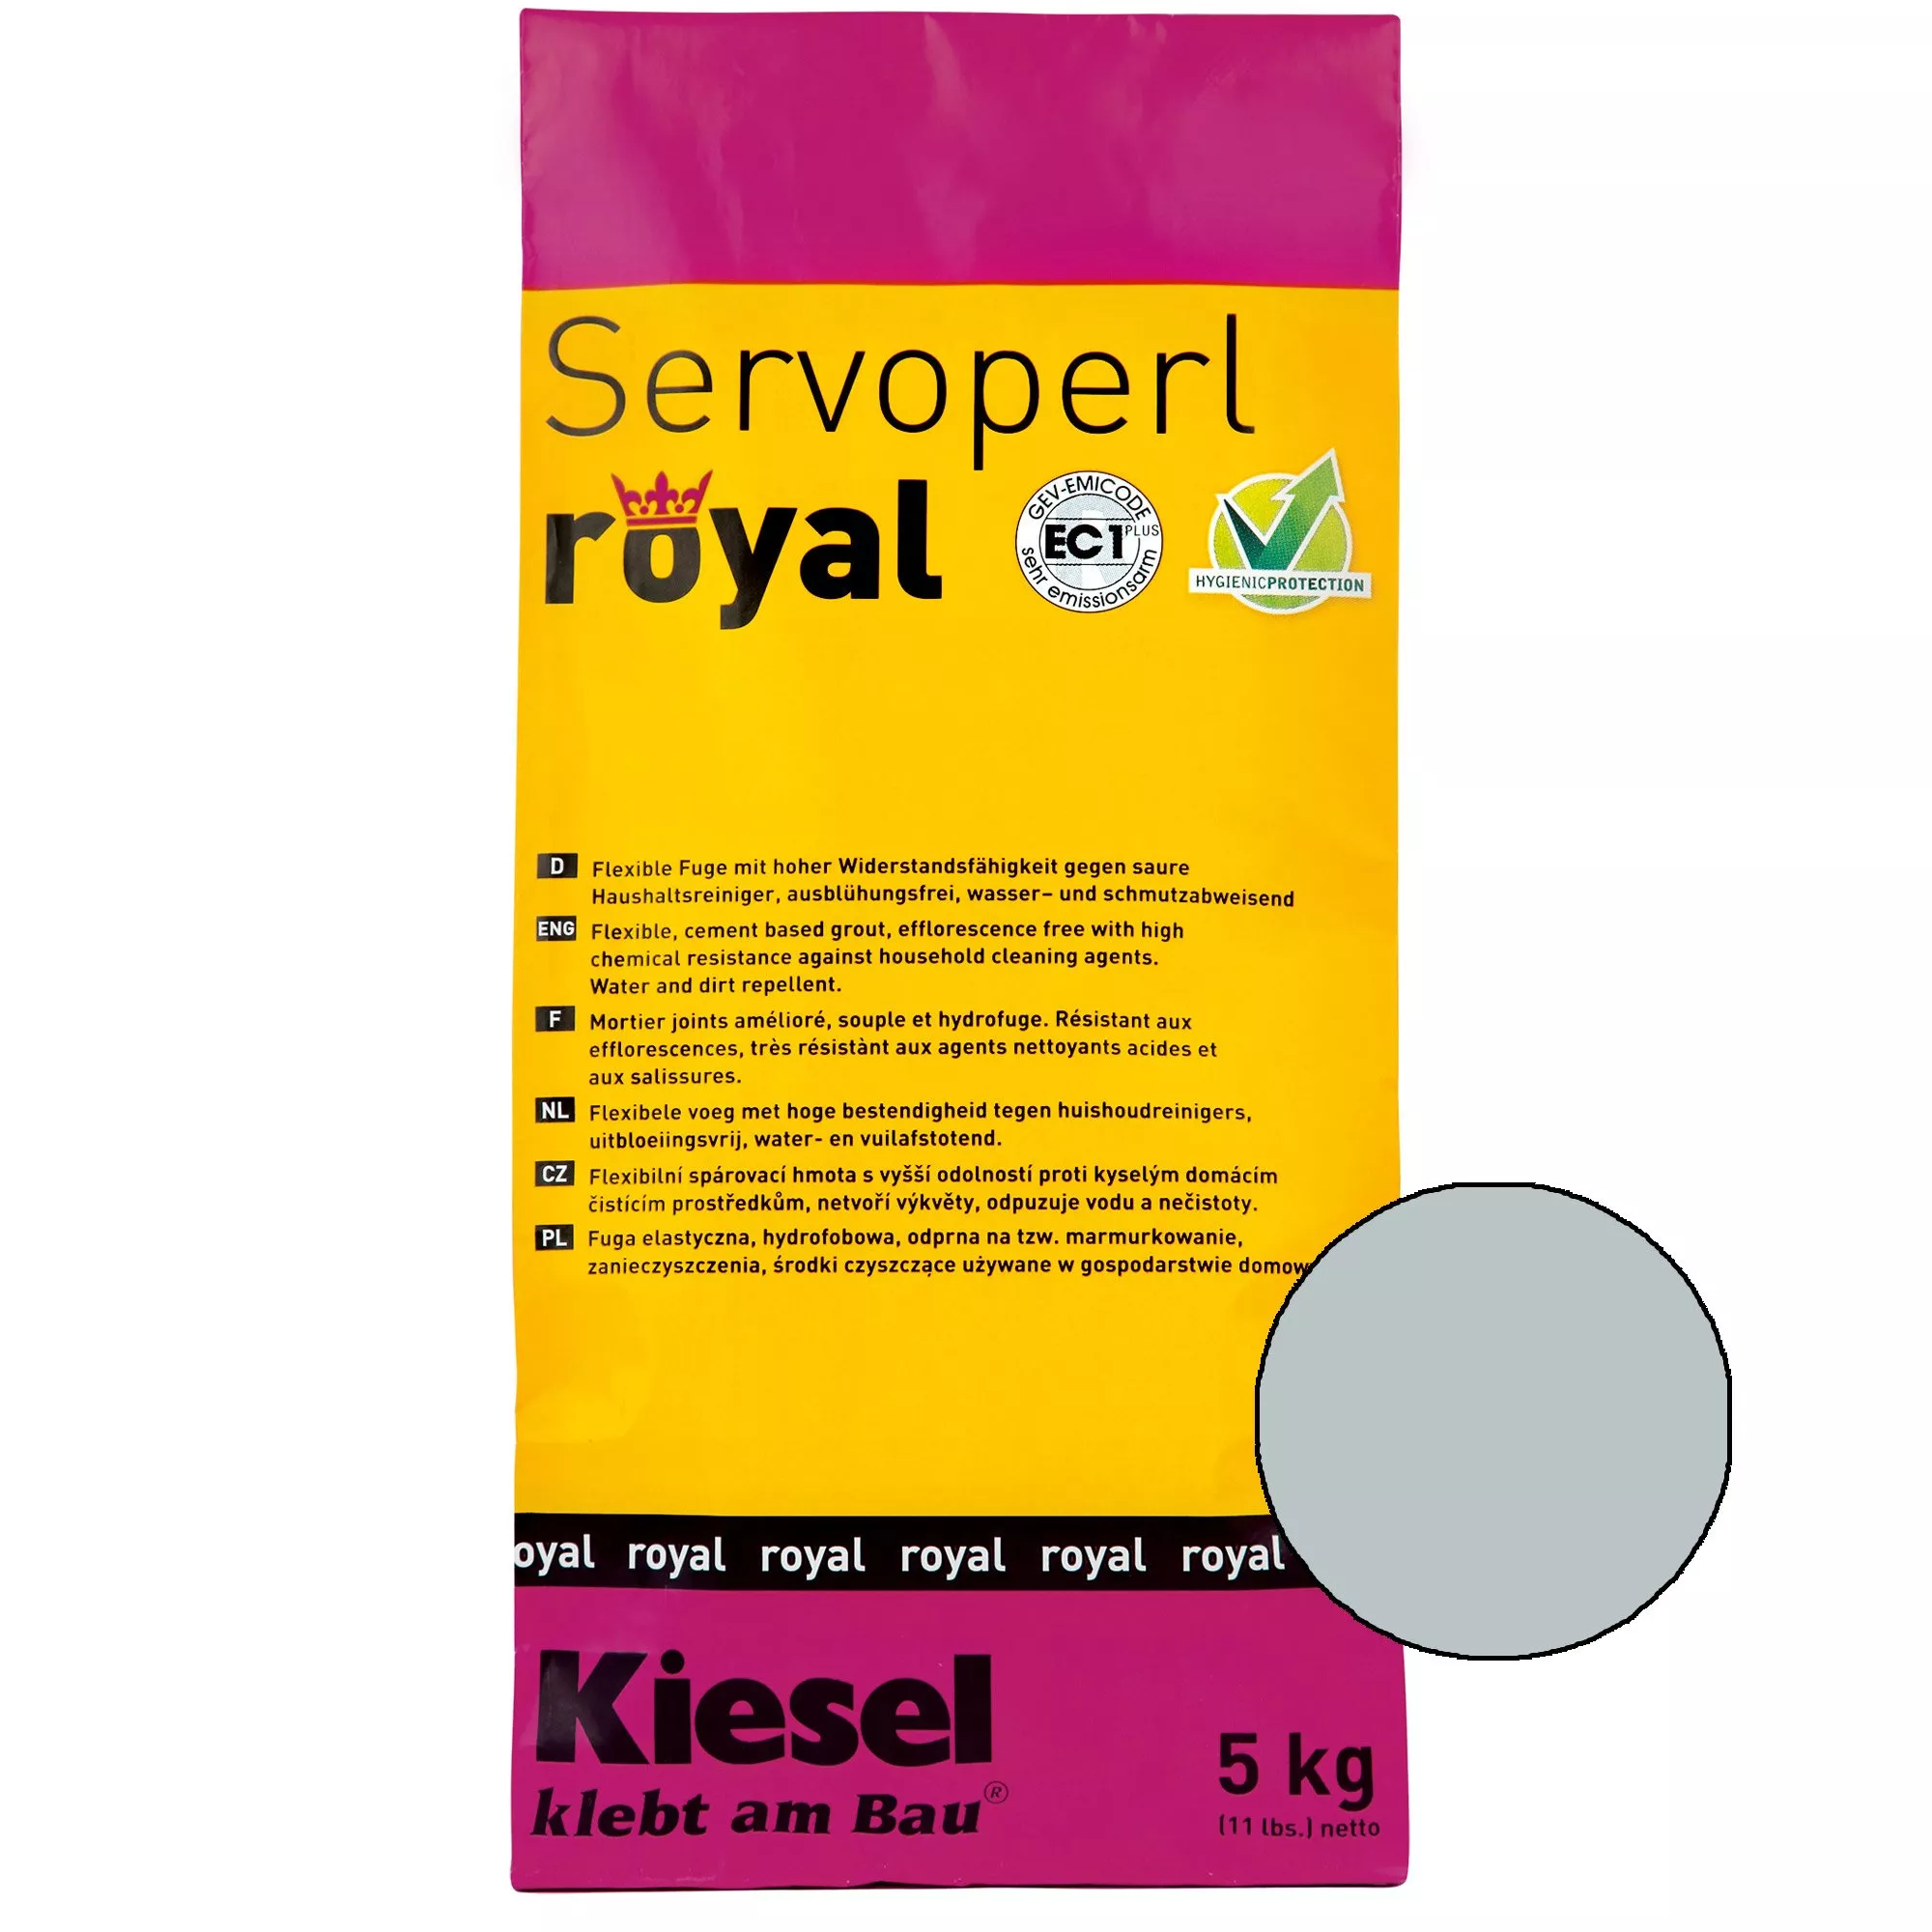 Kiesel Servoperl royal - Flexible, wasser- und schmutzabweisende Fuge (5KG Manhatten)